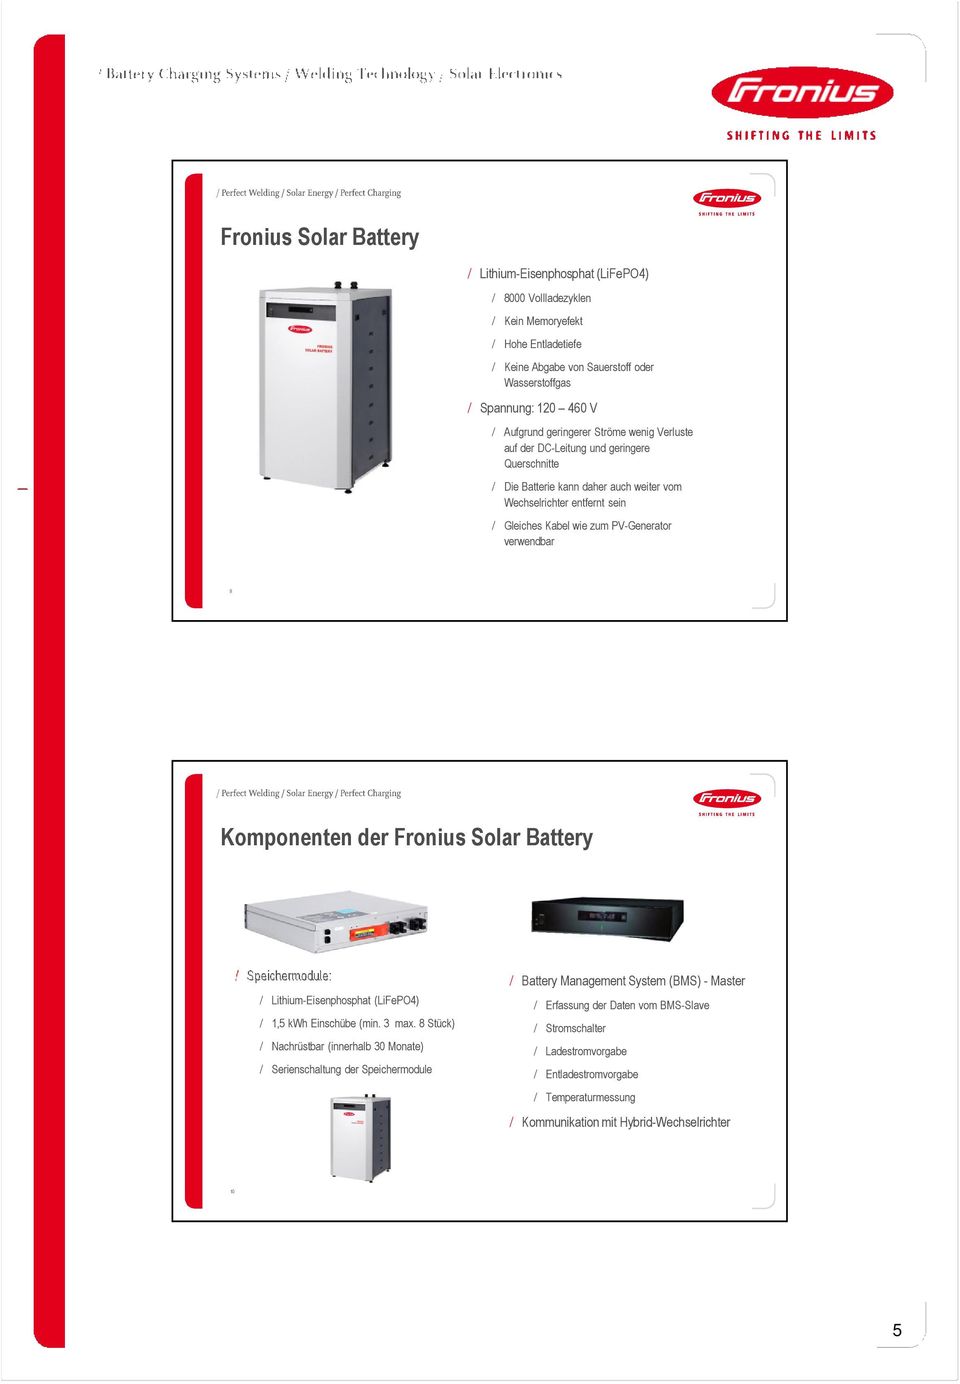 9 Komponenten der Fronius Solar Battery / Speichermodule: / Lithium-Eisenphosphat (LiFePO4) / 1,5 kwh Einschübe (min. 3 max.